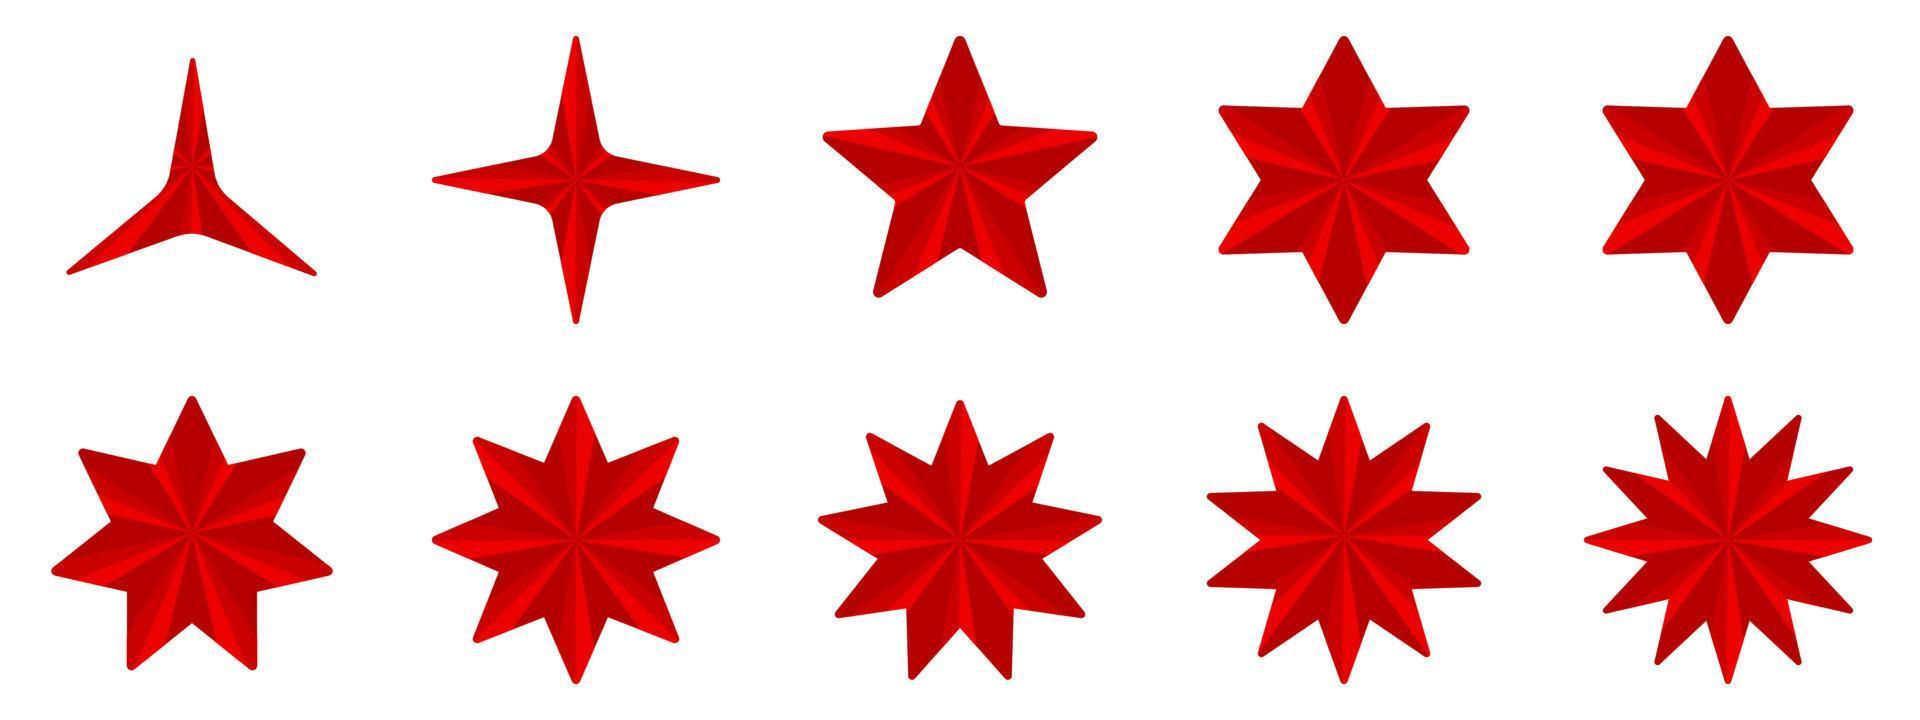 conjunto de forma de estallido rojo, ilustración de vector de textura de fondo abstracto